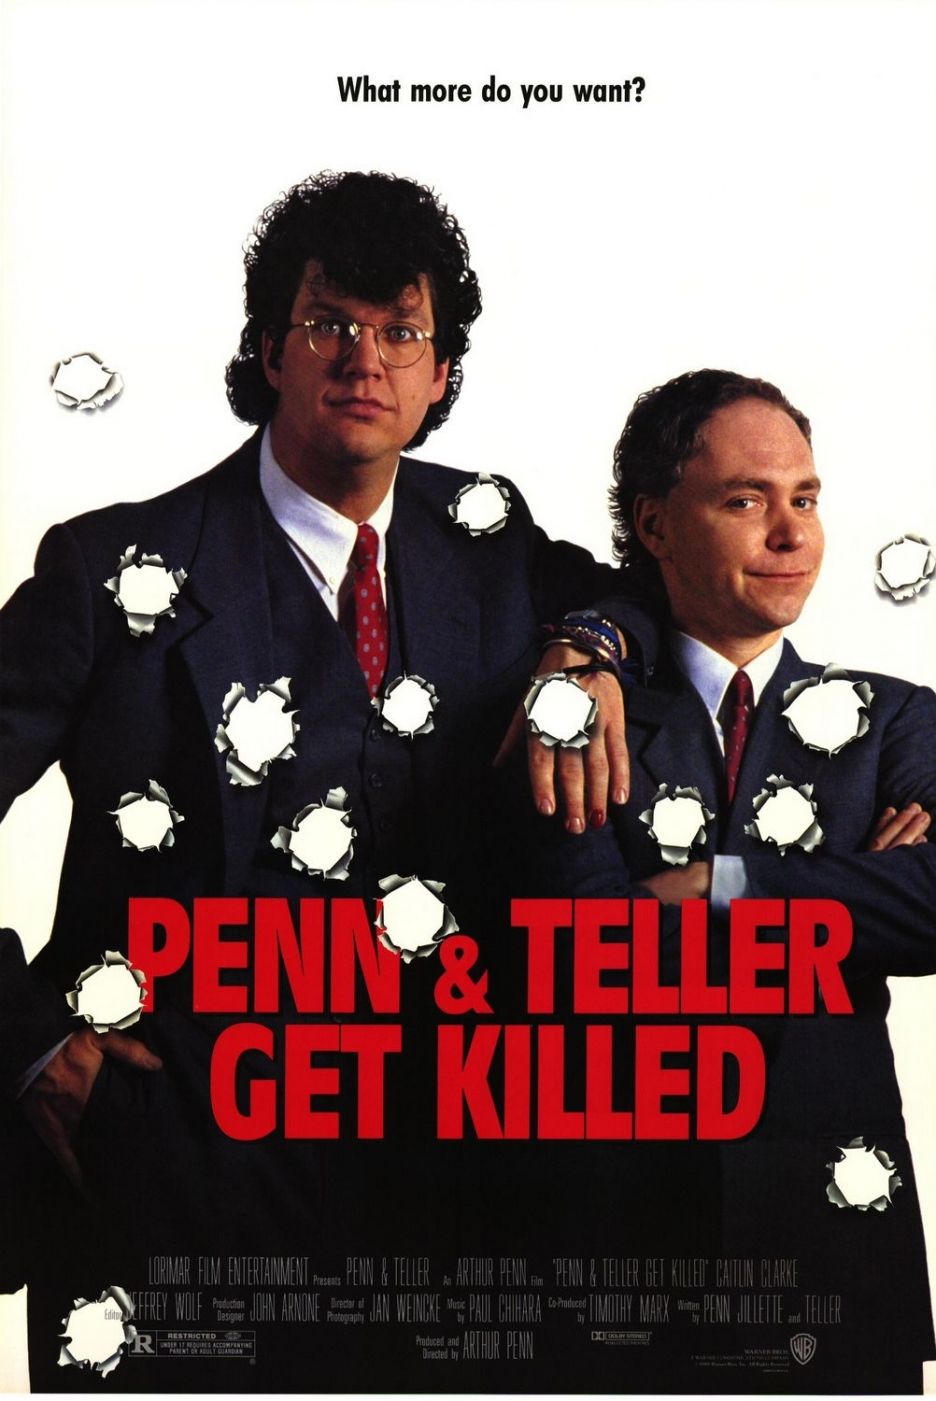 Penn & Teller Get Killed (1989) starring Penn Jillette on DVD on DVD